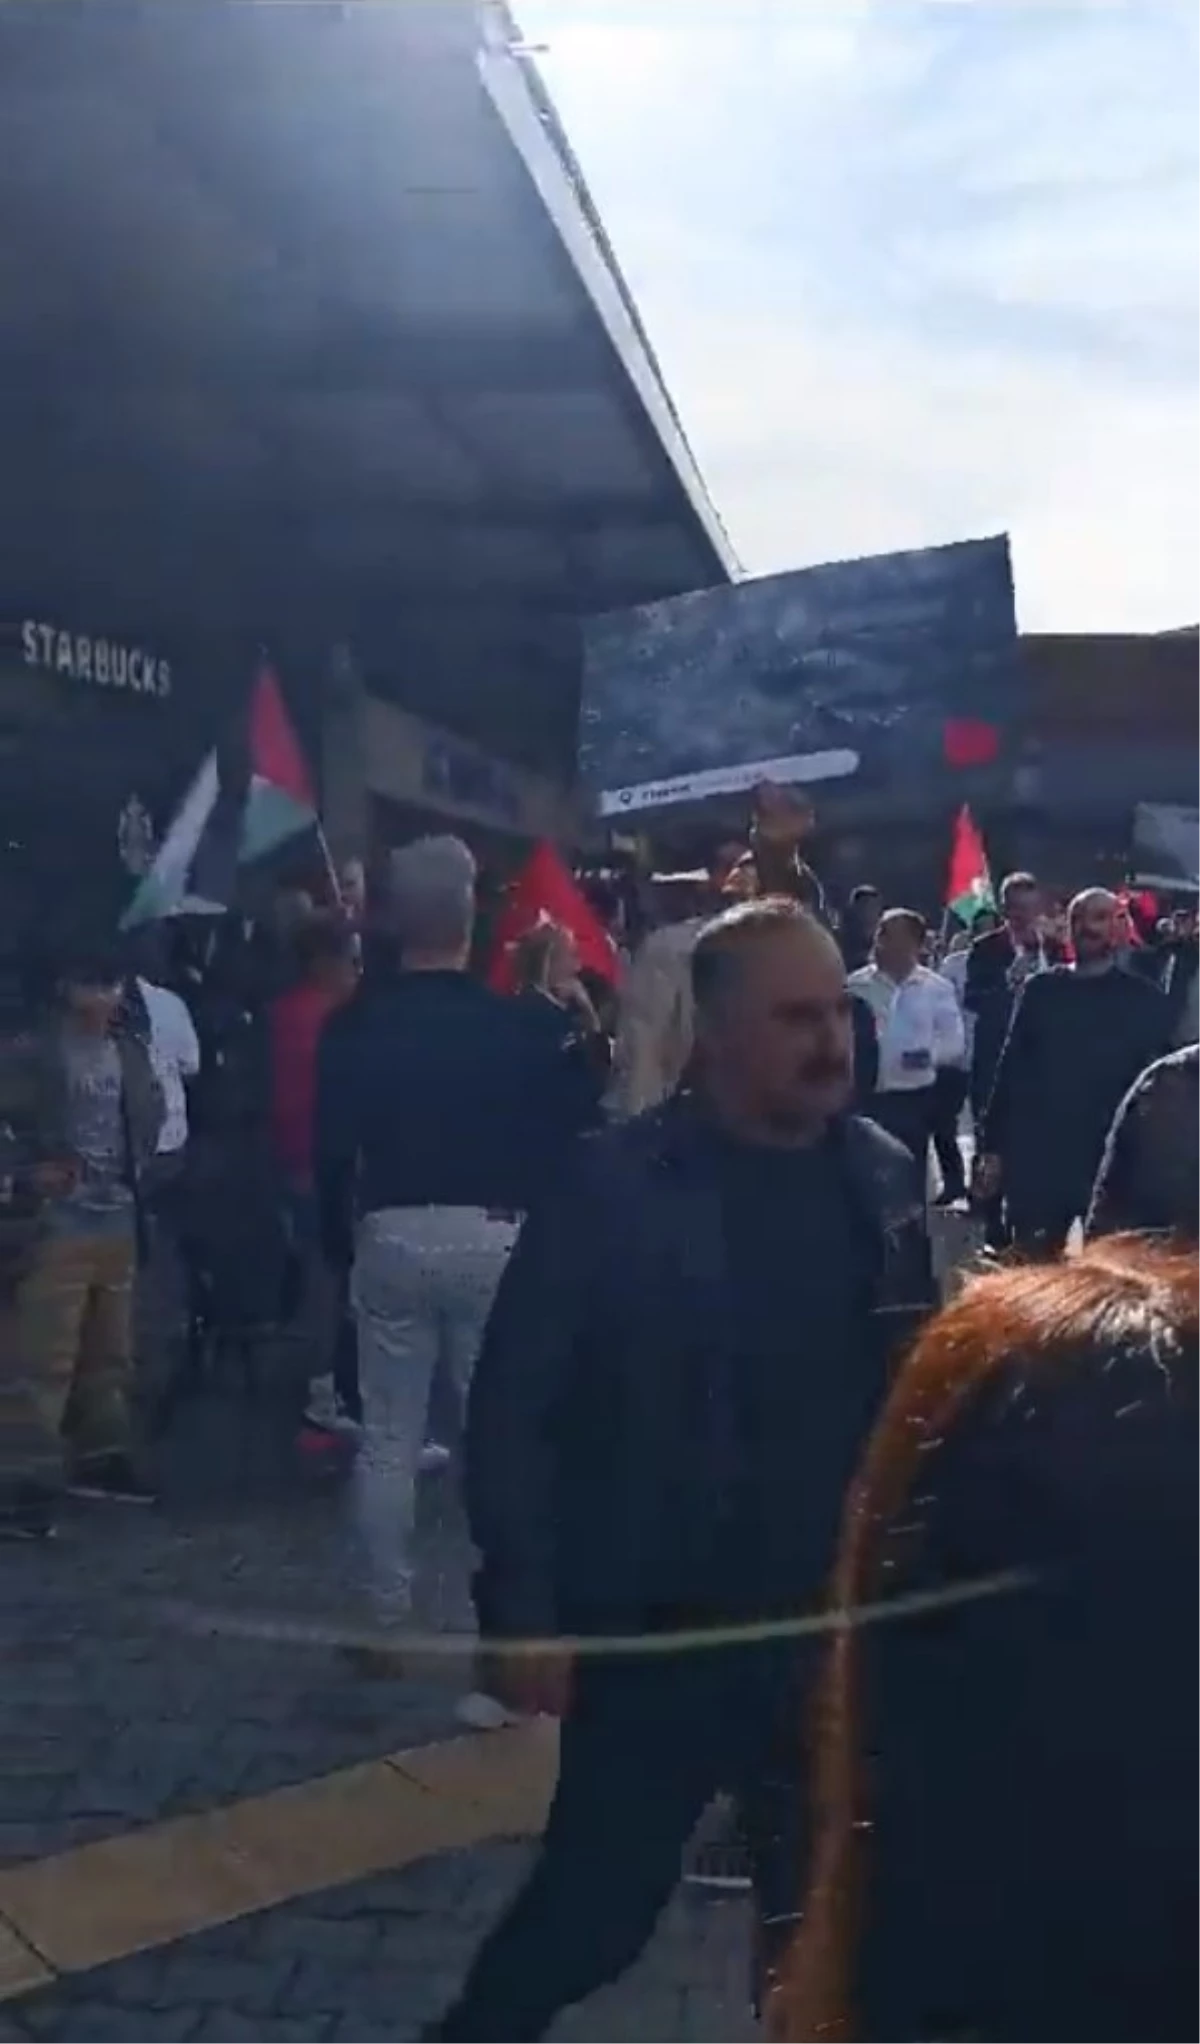 İsrail protestosu için kafe basıp müşterileri rahatsız eden kişilere soruşturma başlatıldı